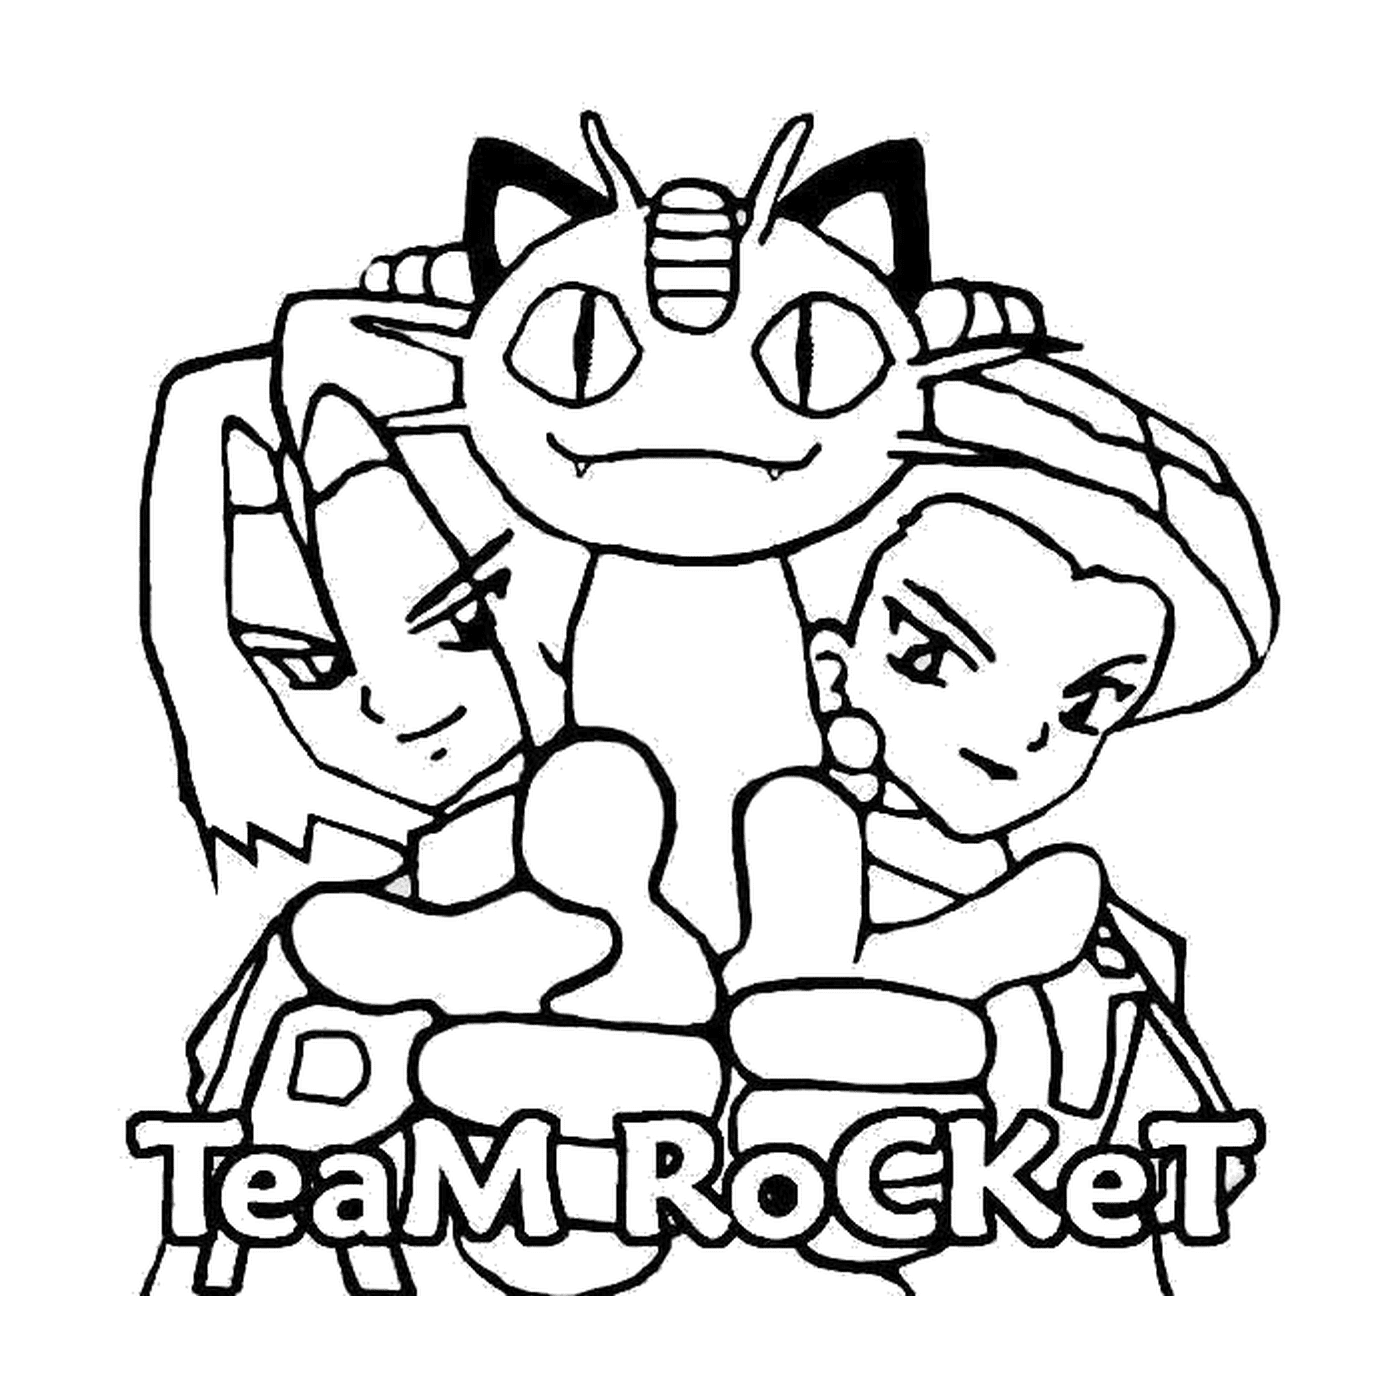  Team Rocket : Gruppe von bösen Jungs 